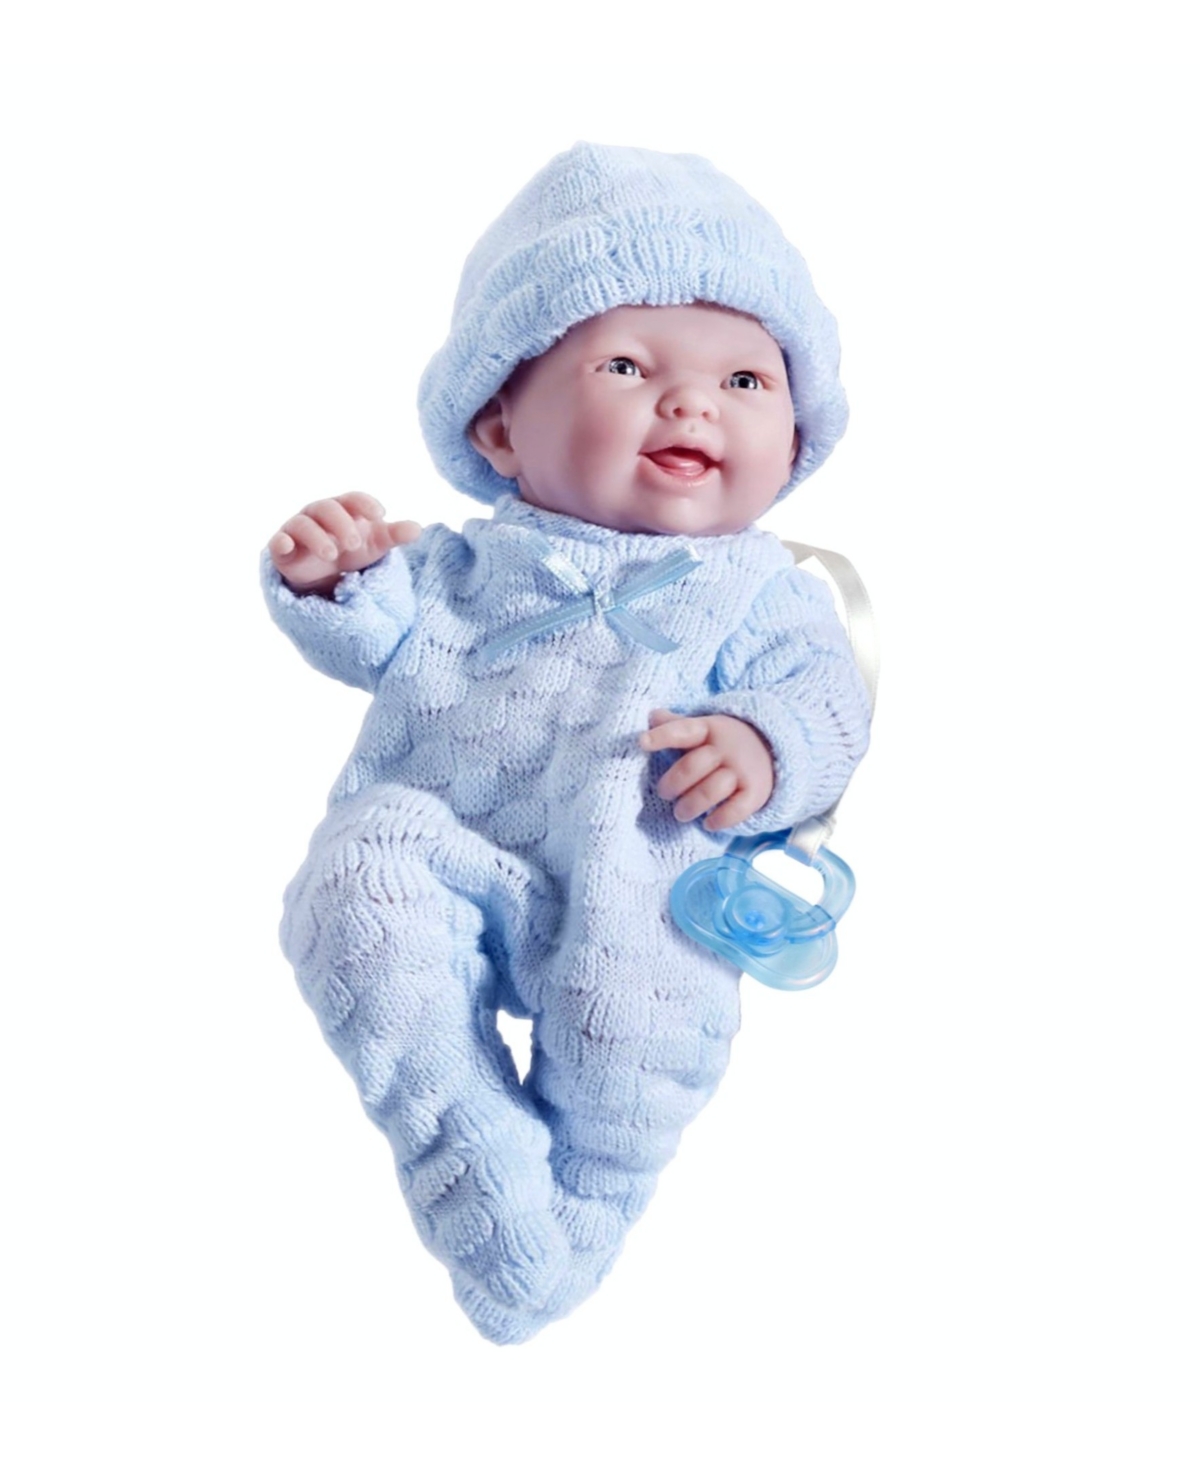 Jc Toys Mini La Newborn 9.5" Real Boy Baby Doll Blue Outfit In Boy - Blue